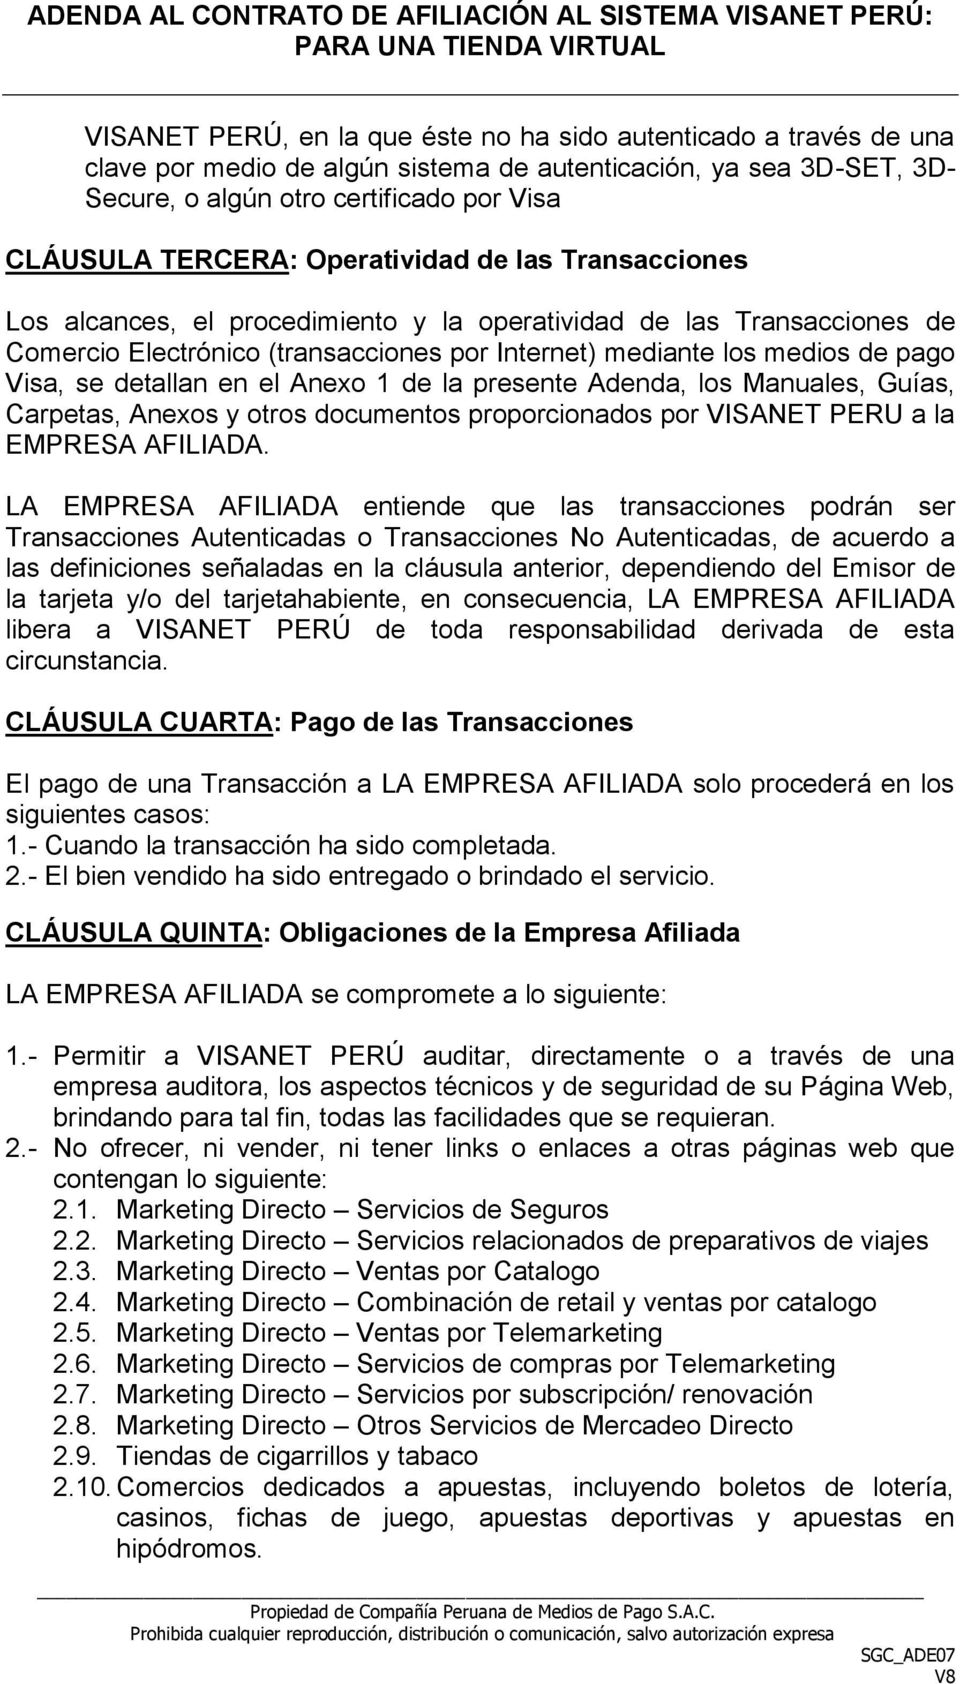 detallan en el Anexo 1 de la presente Adenda, los Manuales, Guías, Carpetas, Anexos y otros documentos proporcionados por VISANET PERU a la EMPRESA AFILIADA.